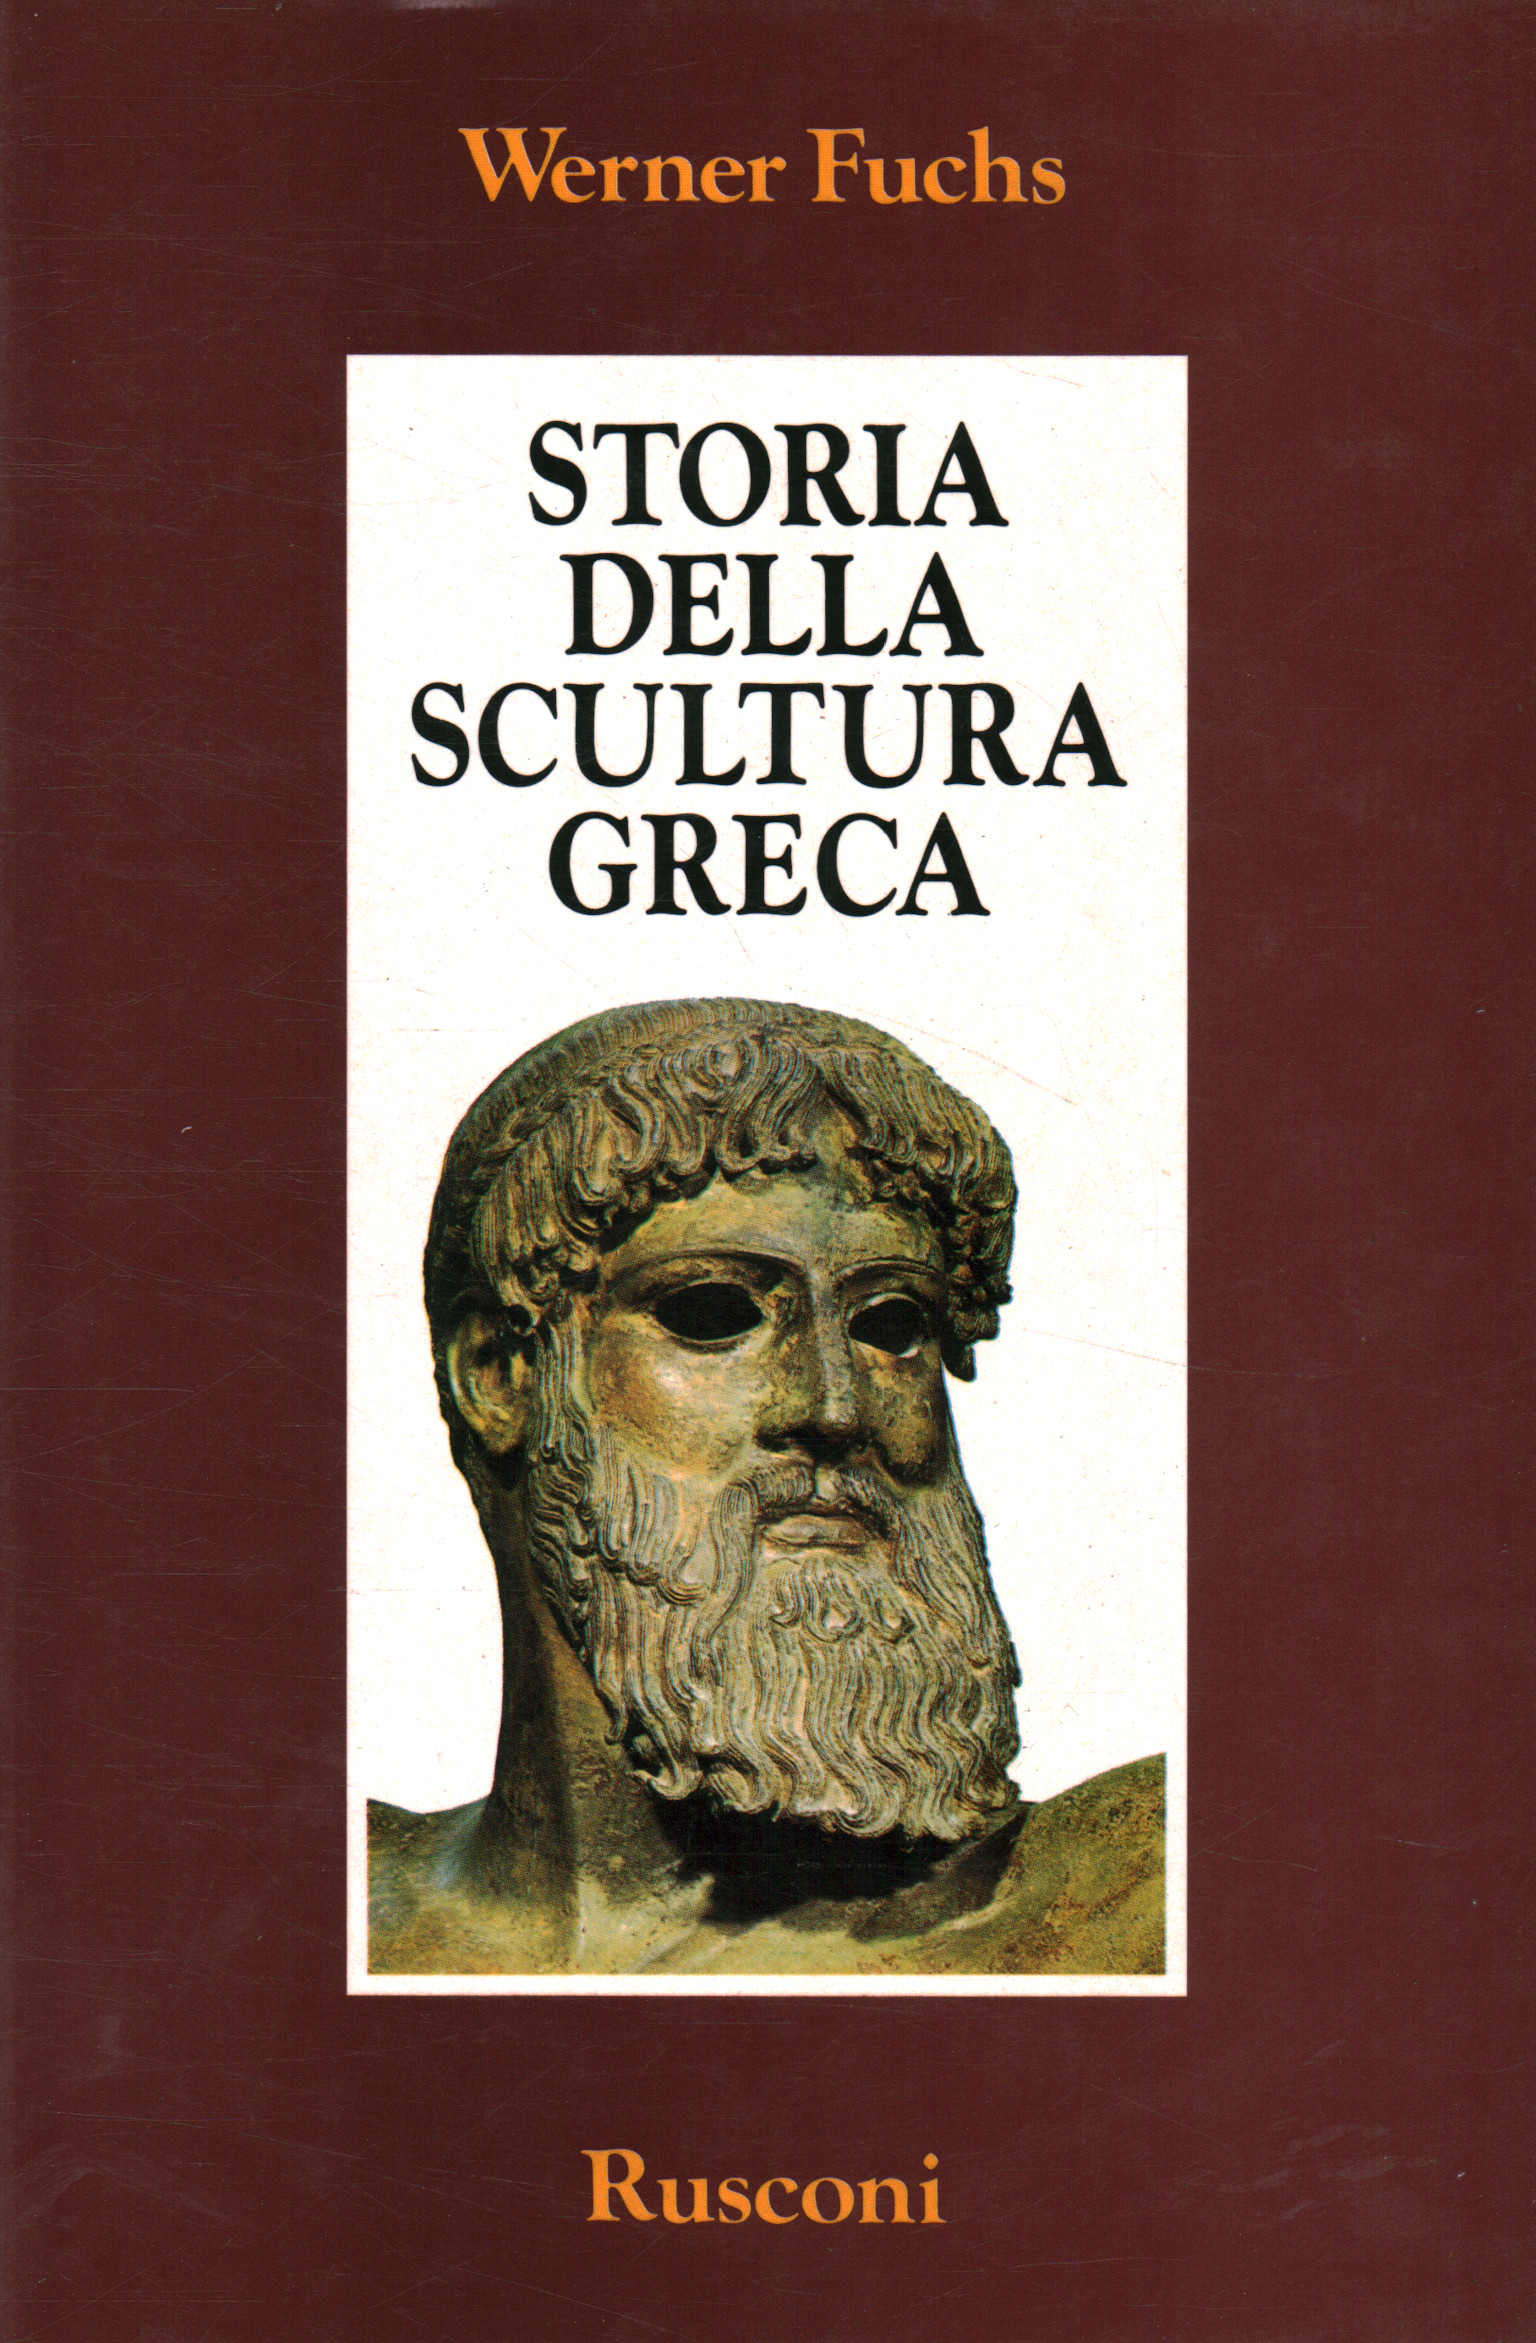 Historia de la escultura griega